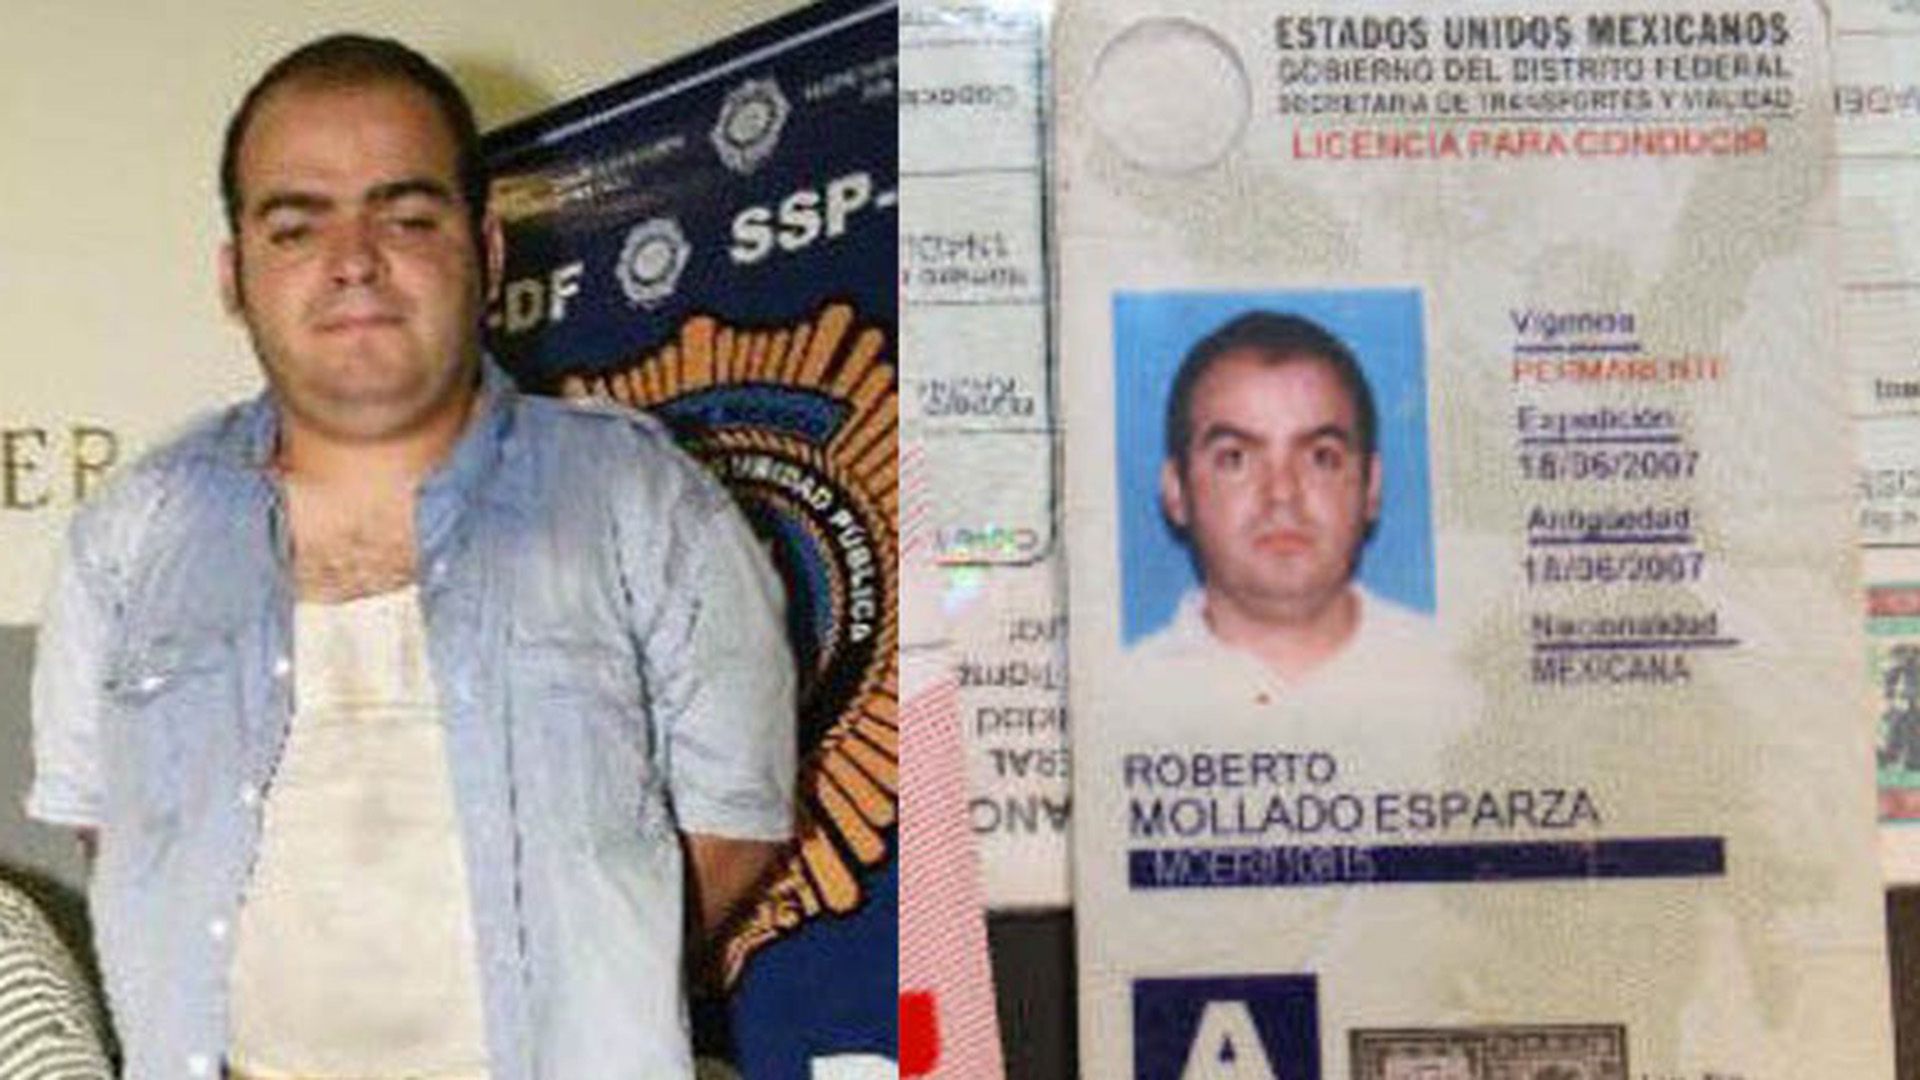 Roberto Mollado Esparza, "El Betito", líder del grupo criminal La Unión de Tepito, fue detenido en 2018. (Especial)